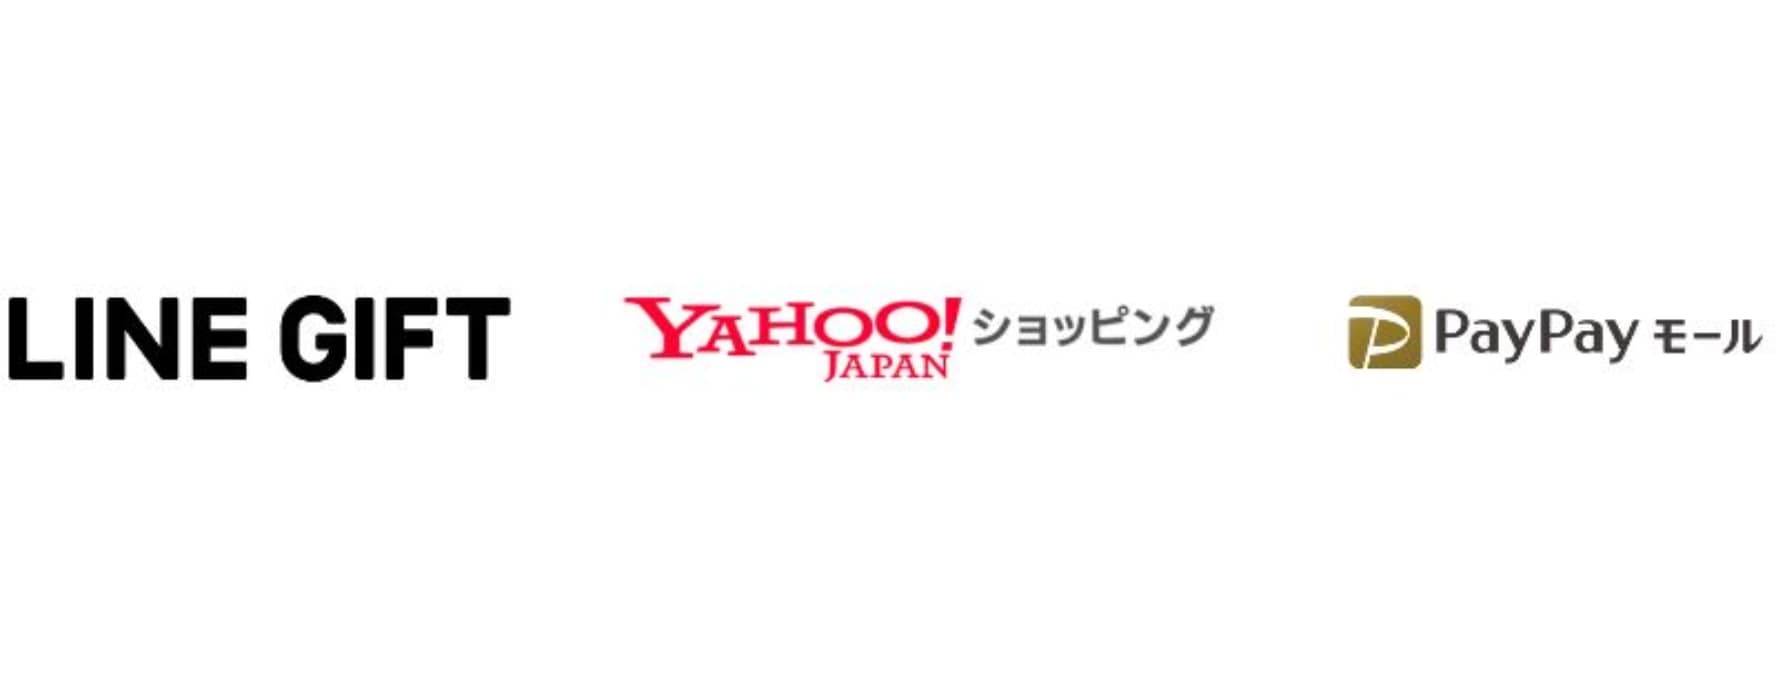 ヤフー、LINEとPayPayモールでの商品・在庫連携を開始　Yahoo!ショッピング上の商品データがLINEギフトへ登録可能に